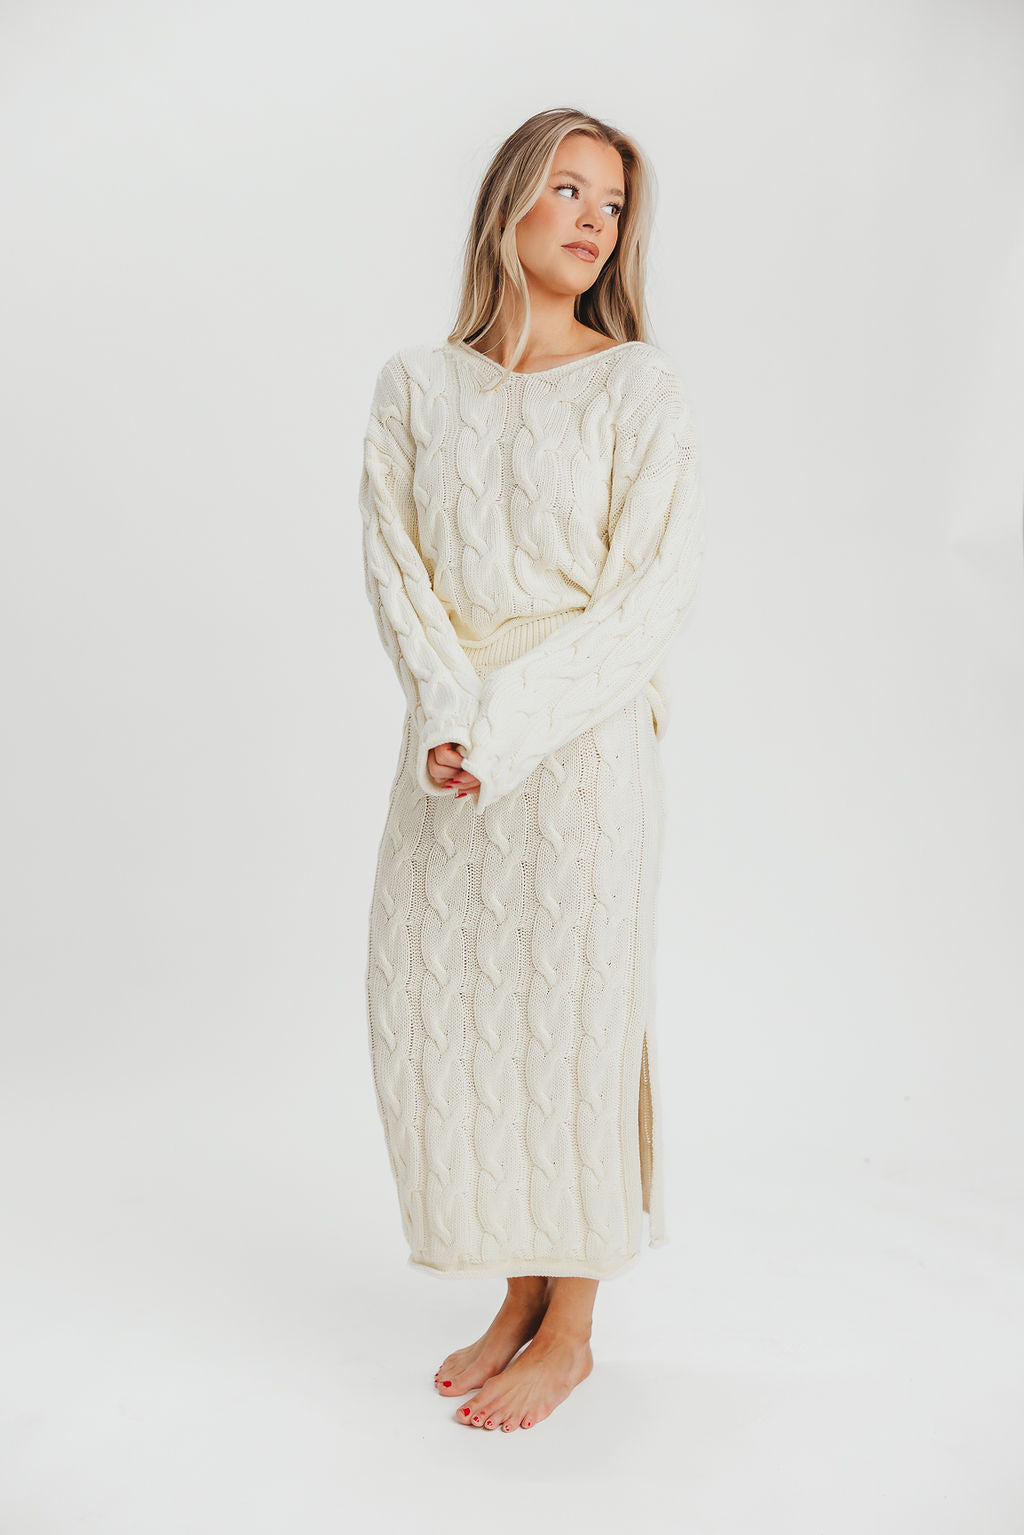 Lottie 100% Cotton Knit Midi Skirt in Cream